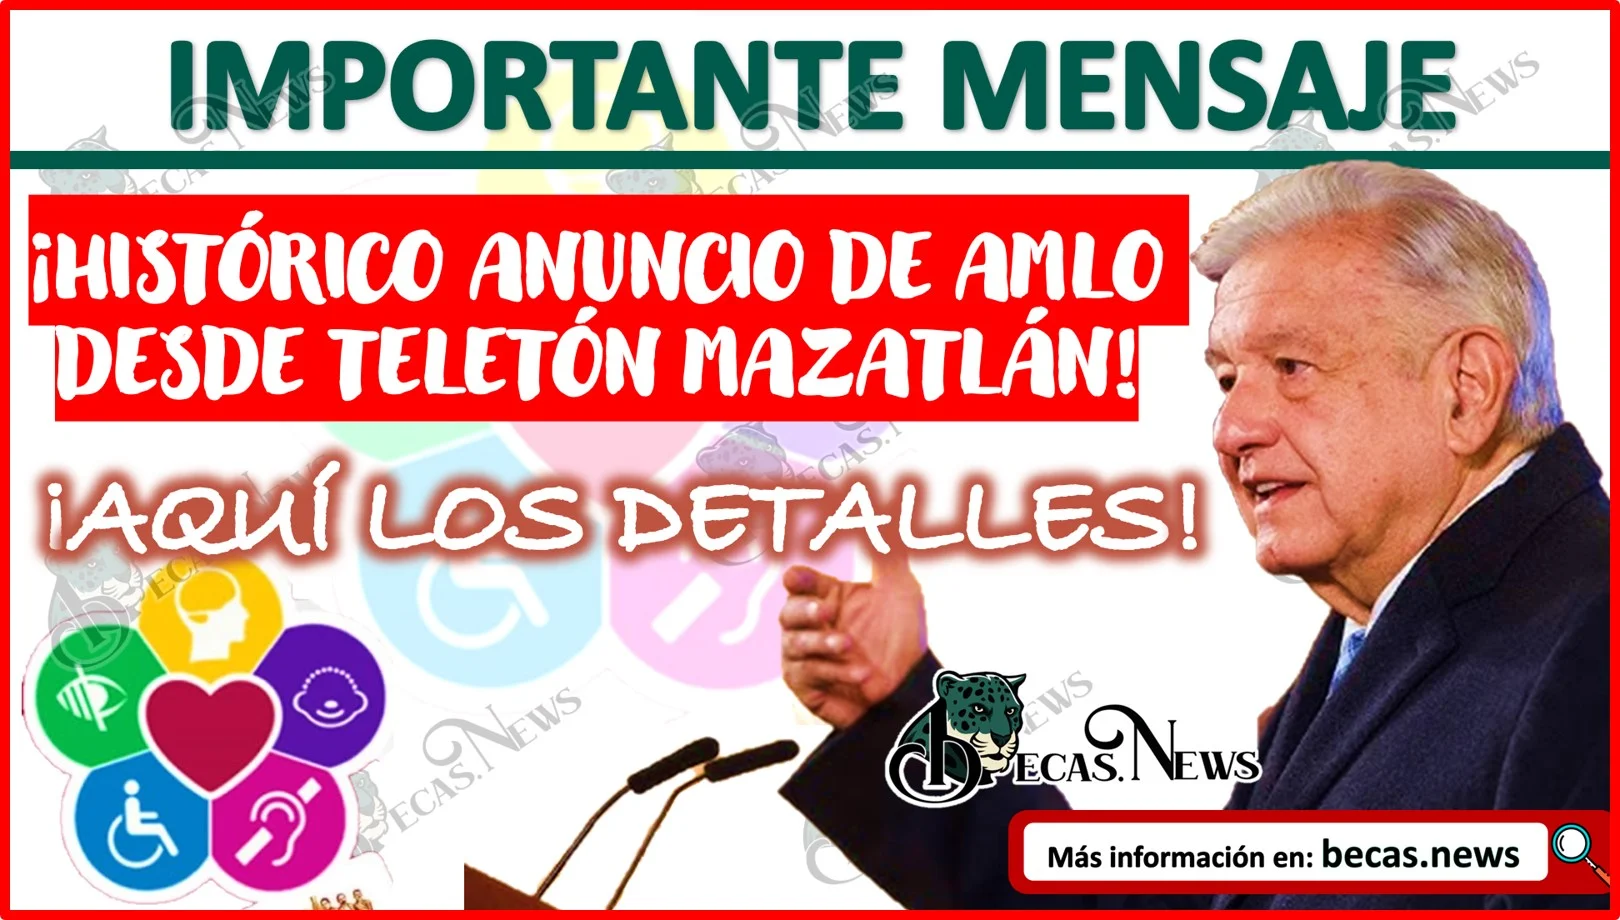 ¡Histórico Anuncio de AMLO desde Teletón Mazatlán! Aquí todos los detalles